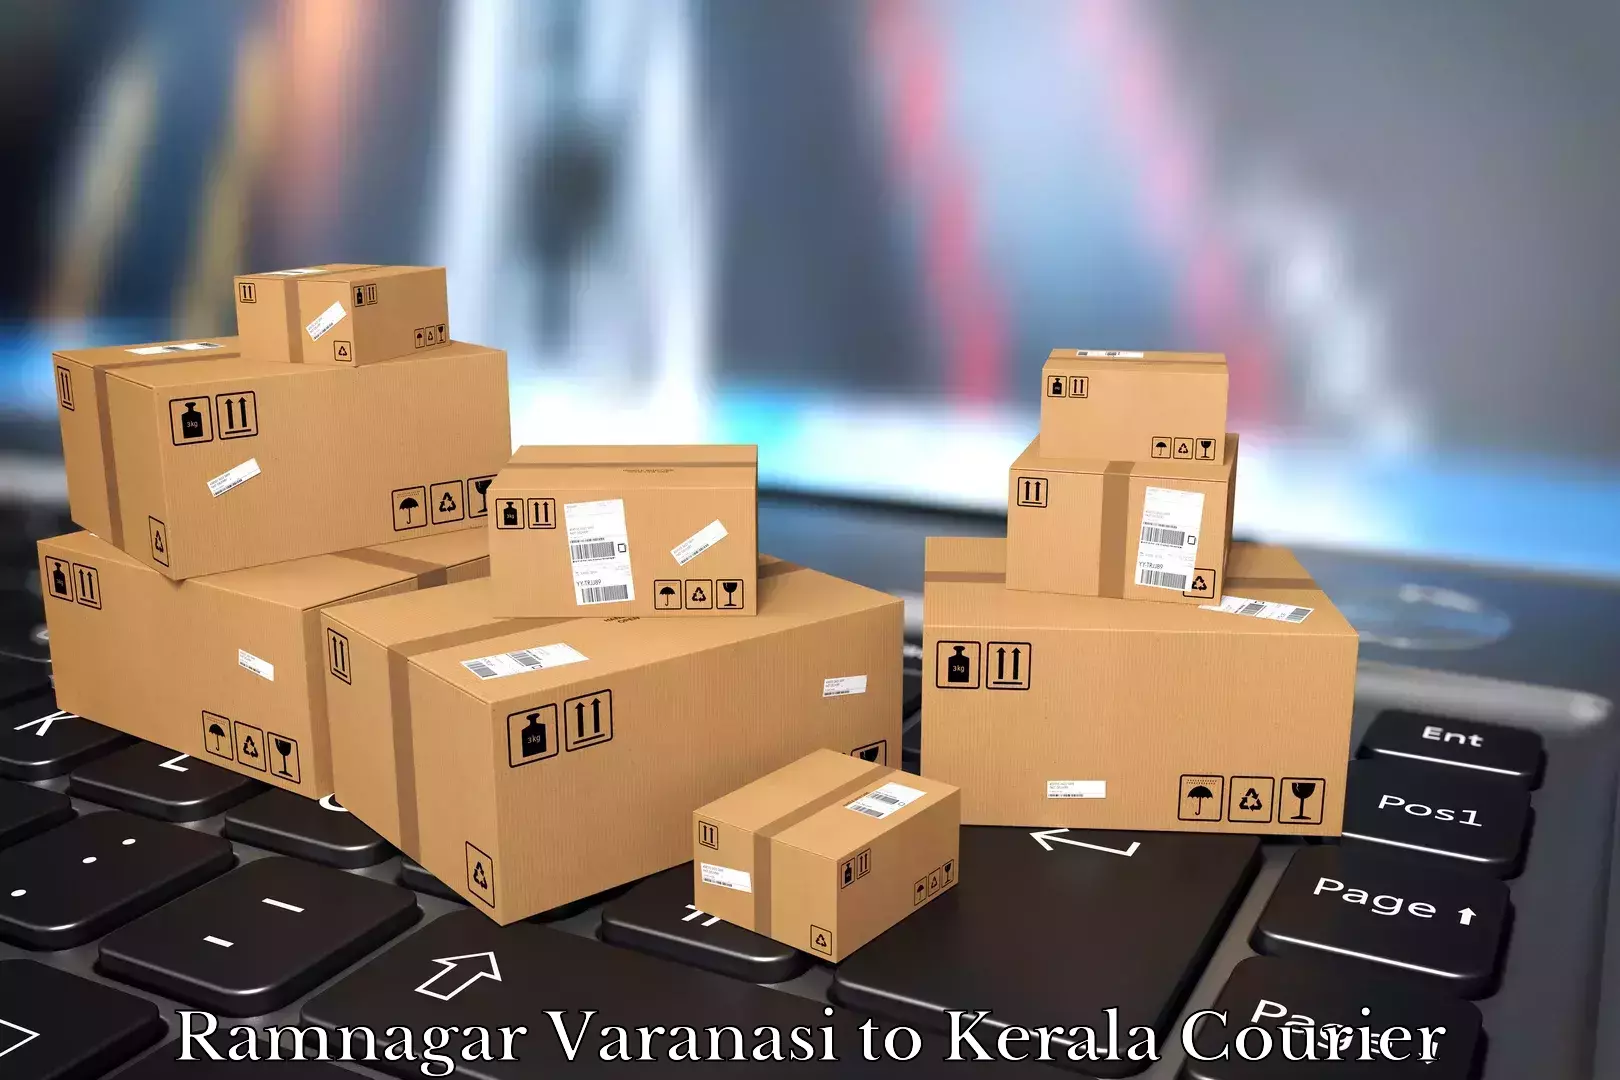 Furniture transport experts Ramnagar Varanasi to Alappuzha